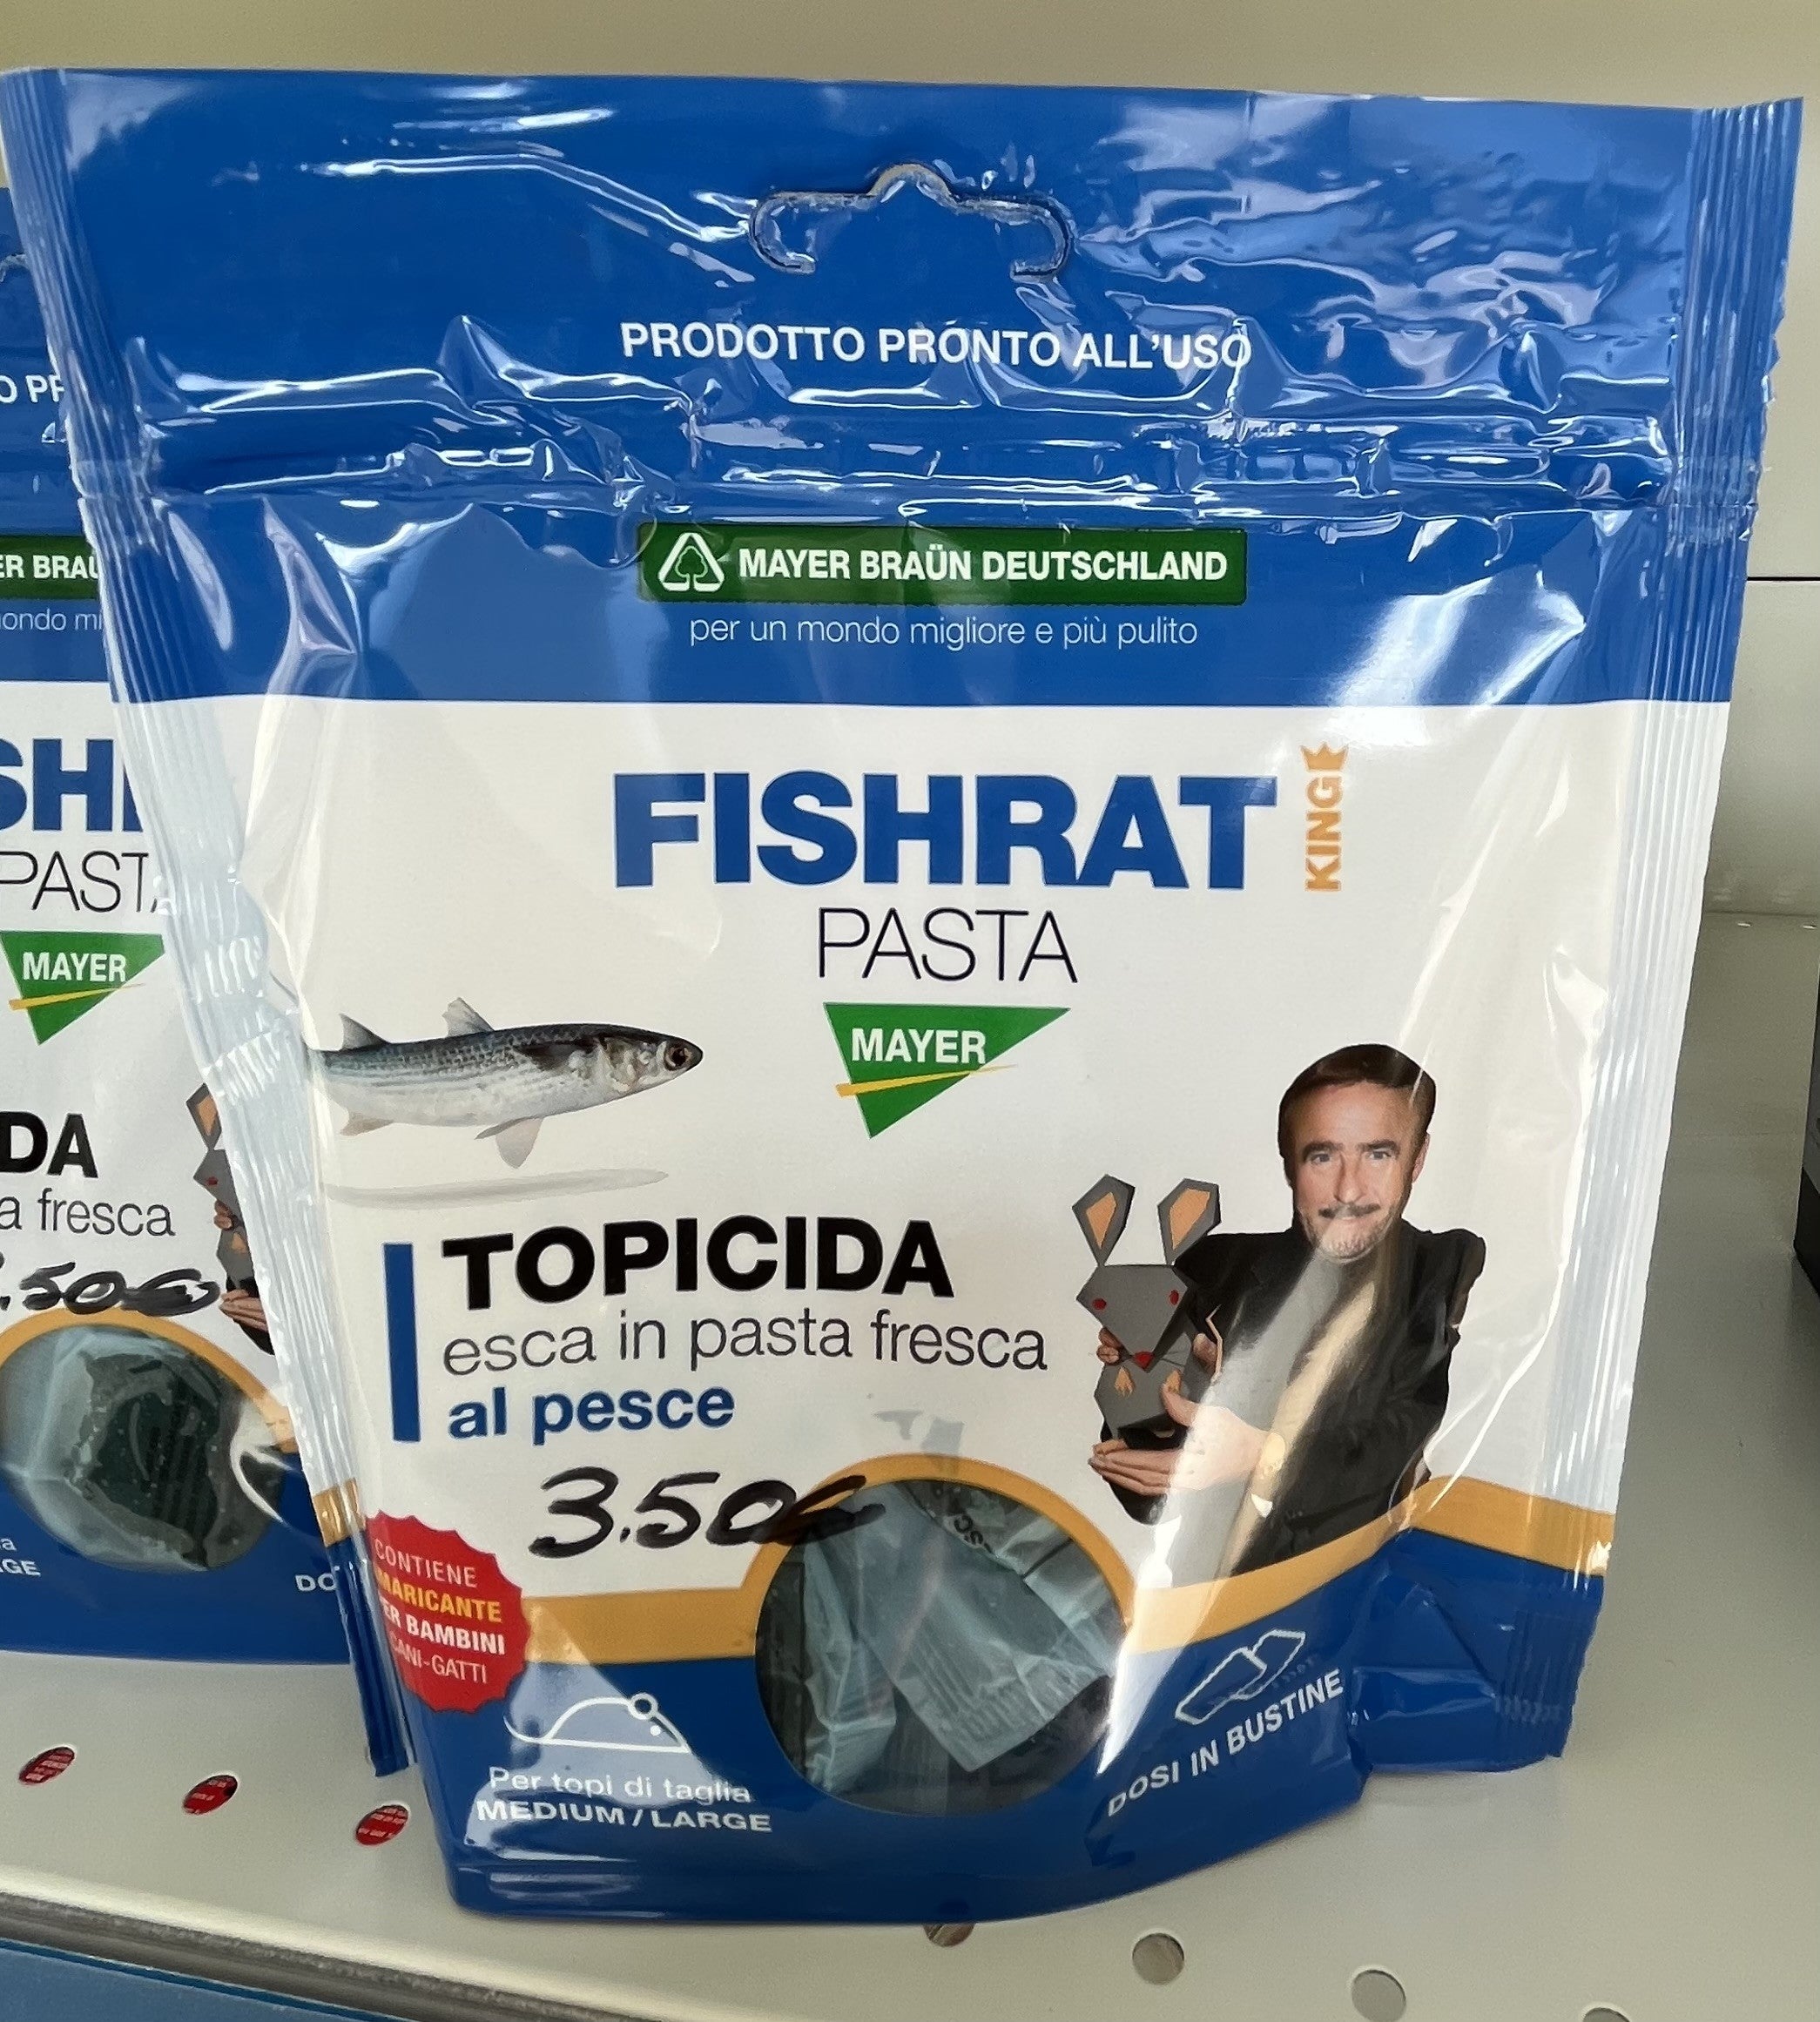 Topicida - Mayer - Pasta - Fishrat - Pronto - Uso - Esca - Fresca - Pesce